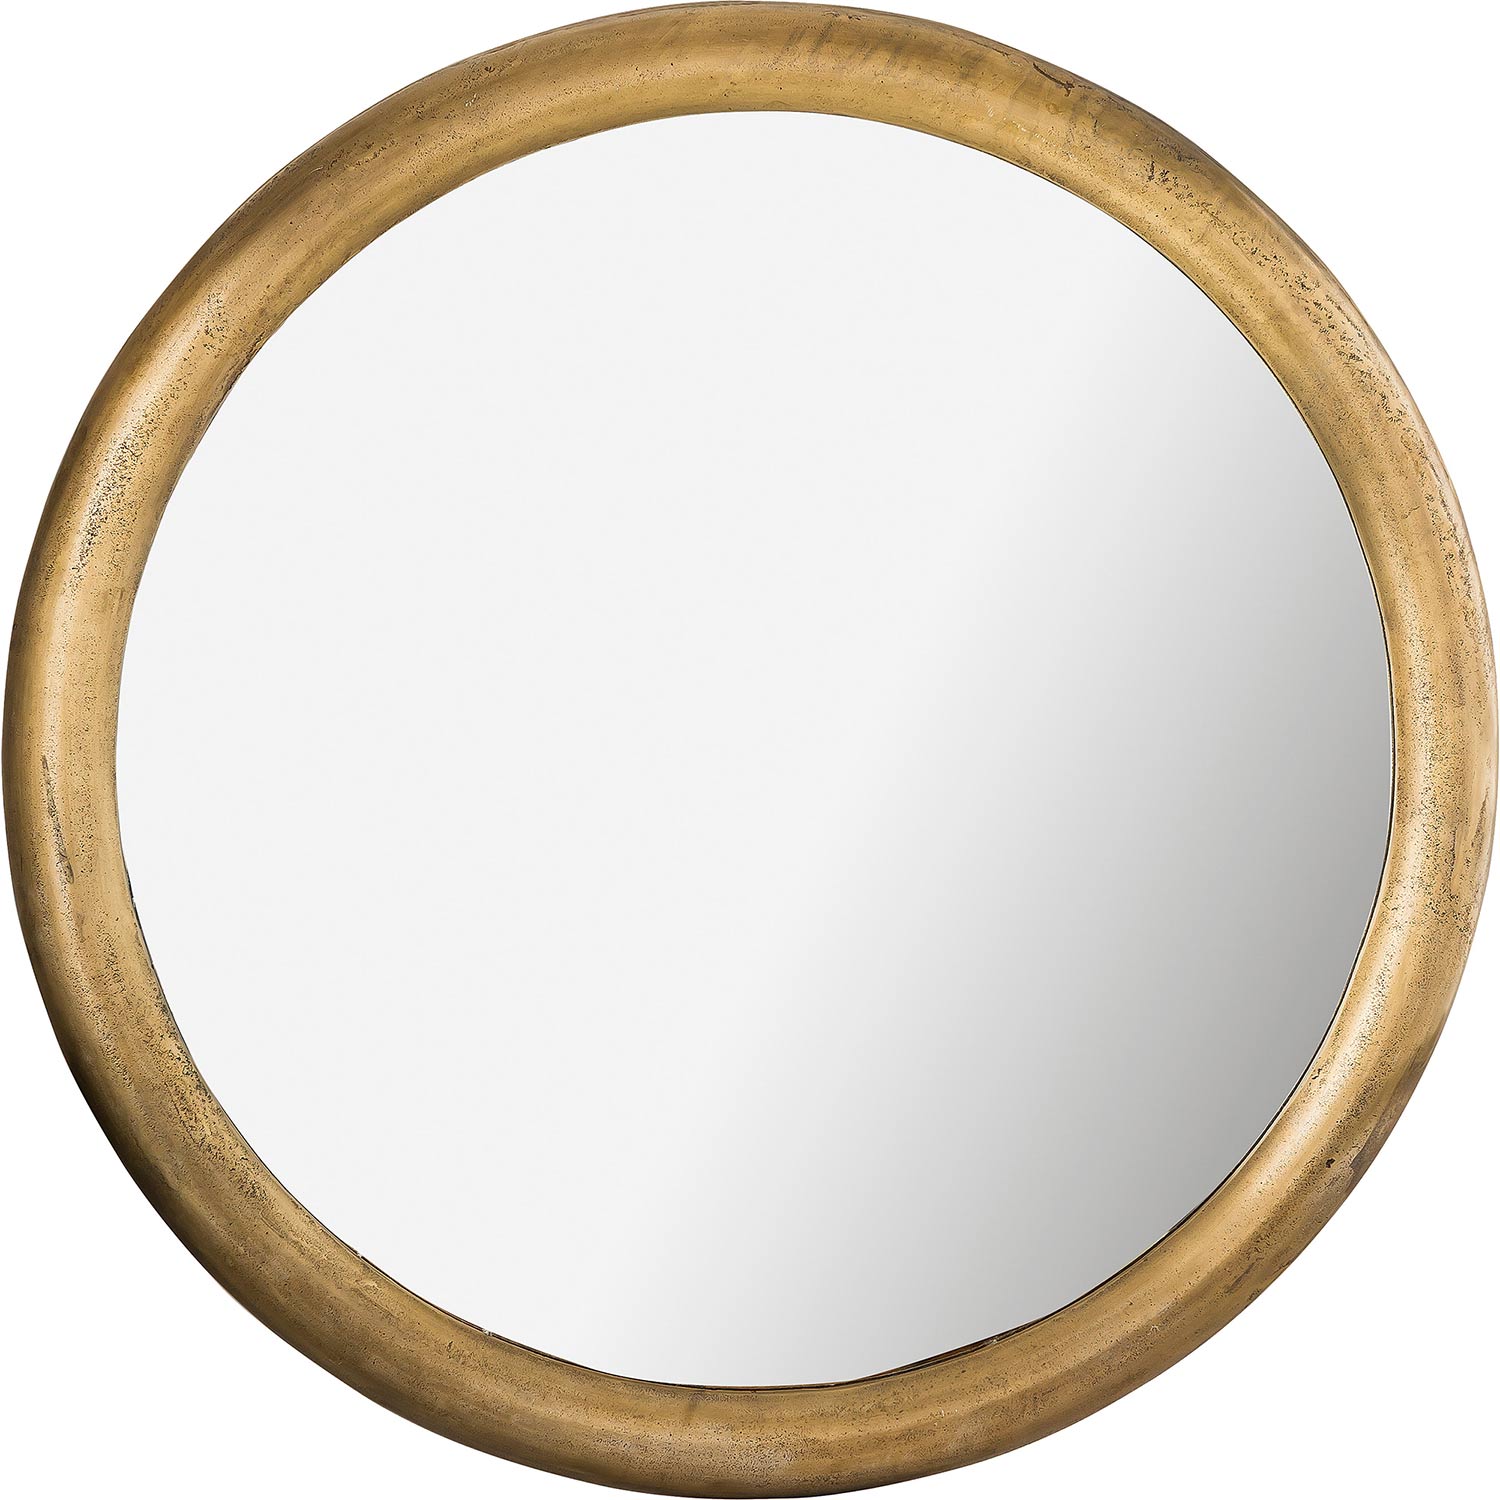 Ren-Wil Dendridge Round Mirror - Antique Brass